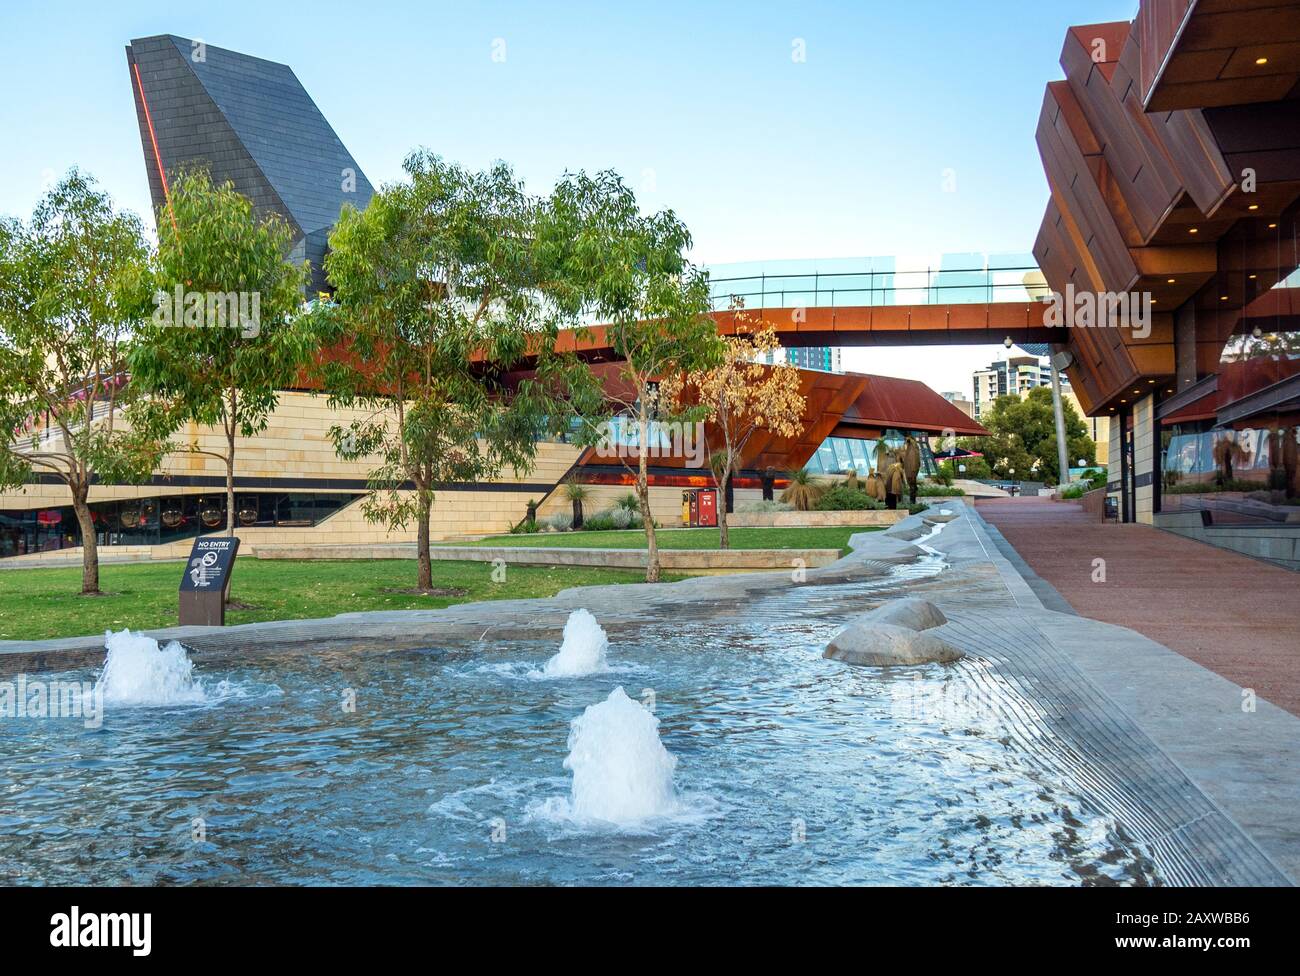 Wasserlinie Wasserskulptur von Jon Tarry Bildhauer am Yagan Square Perth CBD WA Australien. Stockfoto